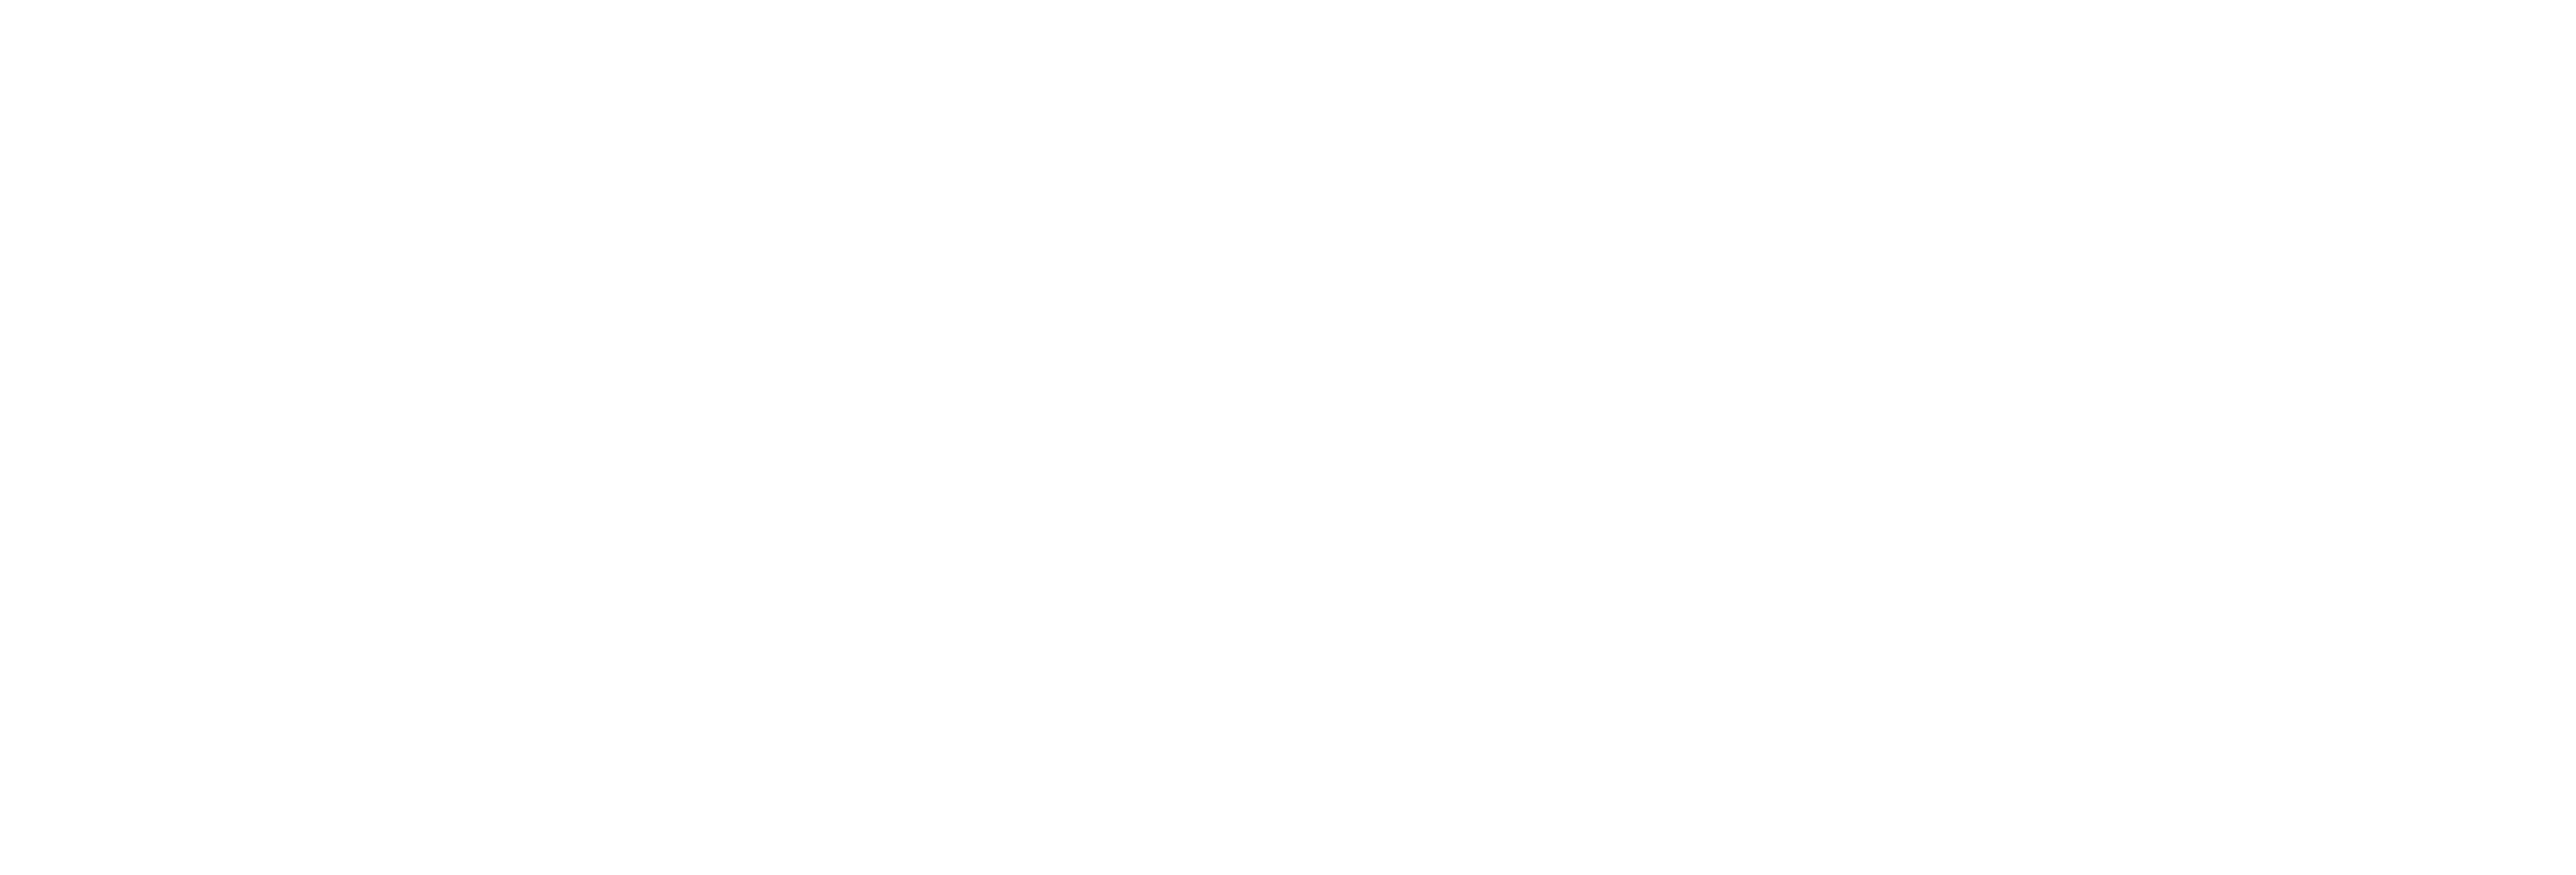 LifeSavvy Media W_White